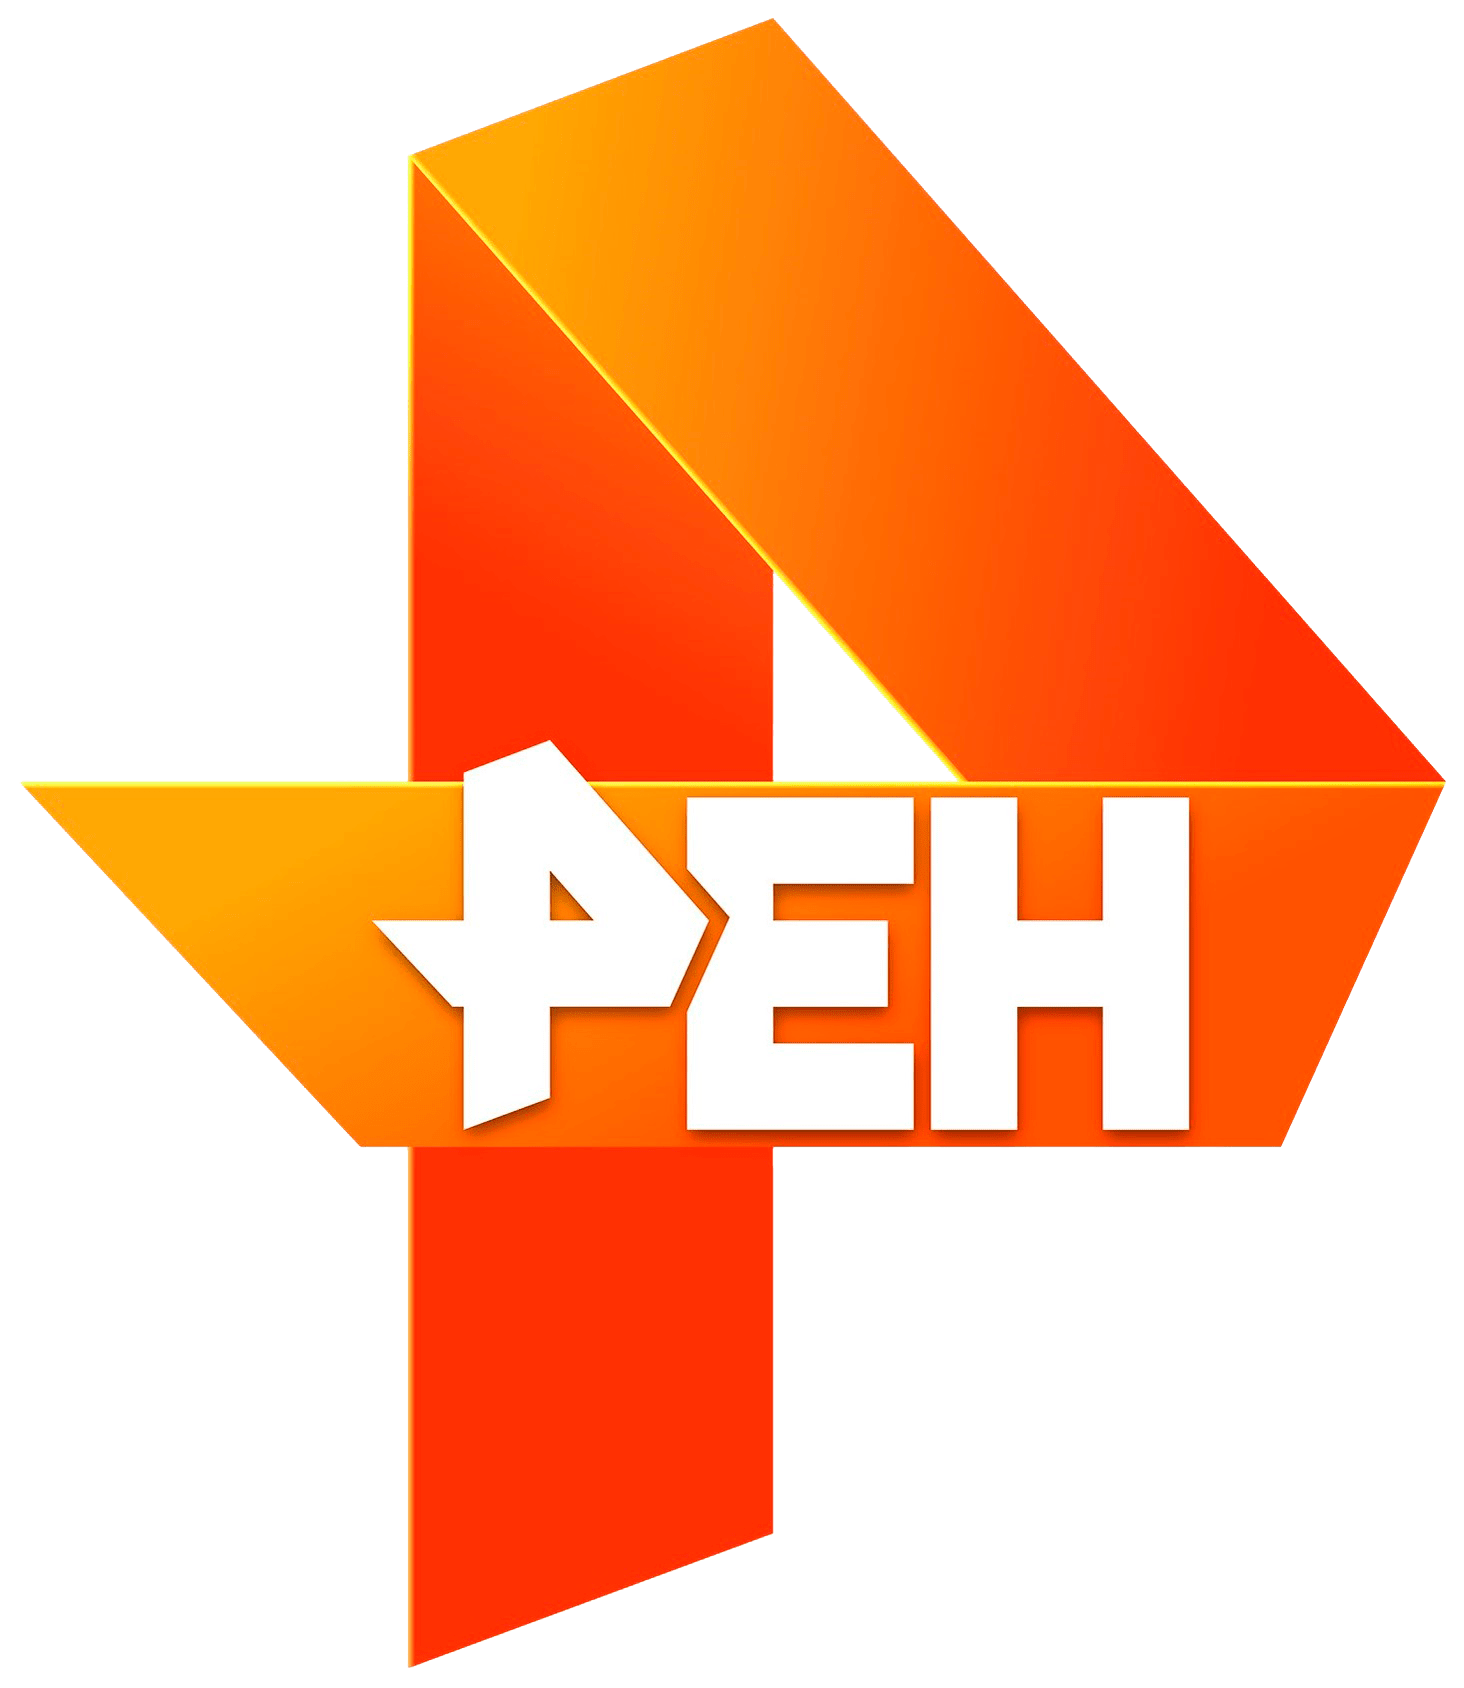 Раземщение рекламы РЕН ТВ, г. Воронеж